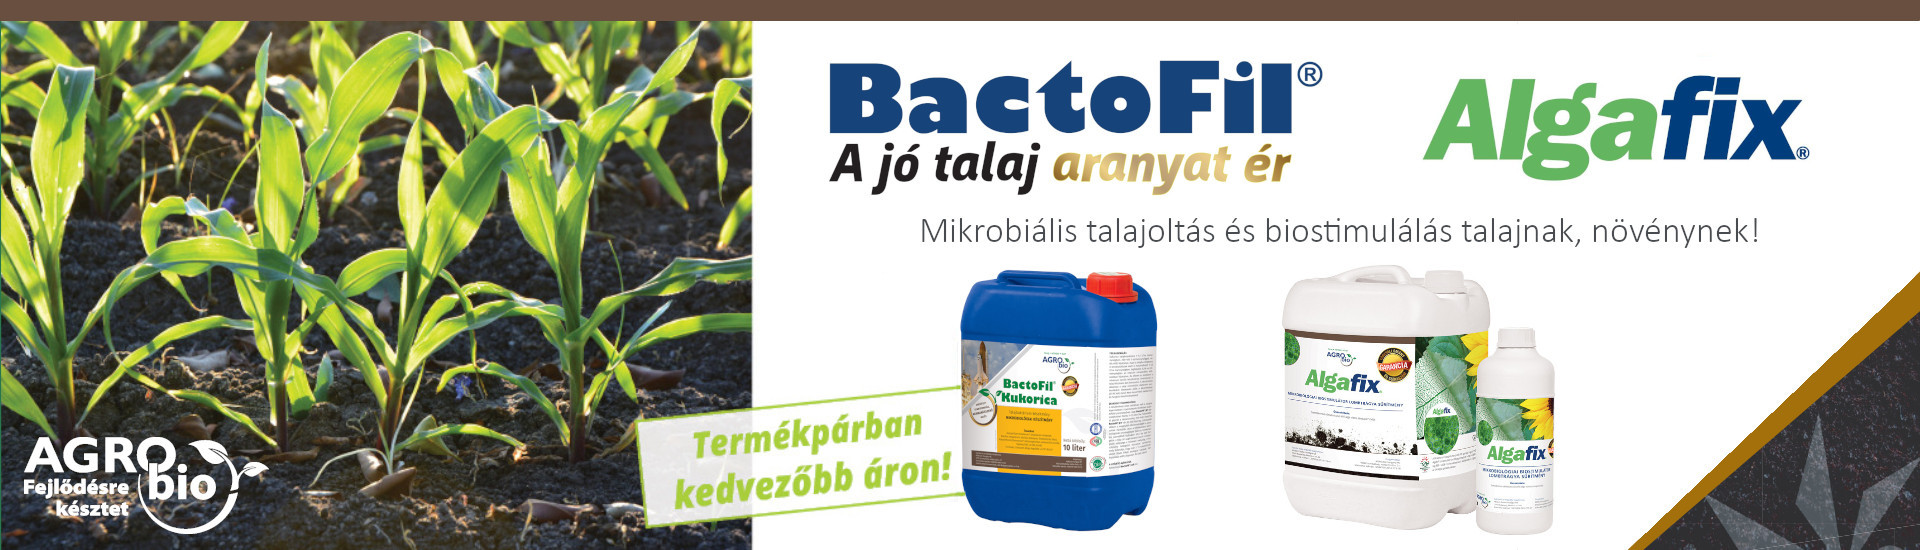 BactoFil termékcsalád és az Algafix  